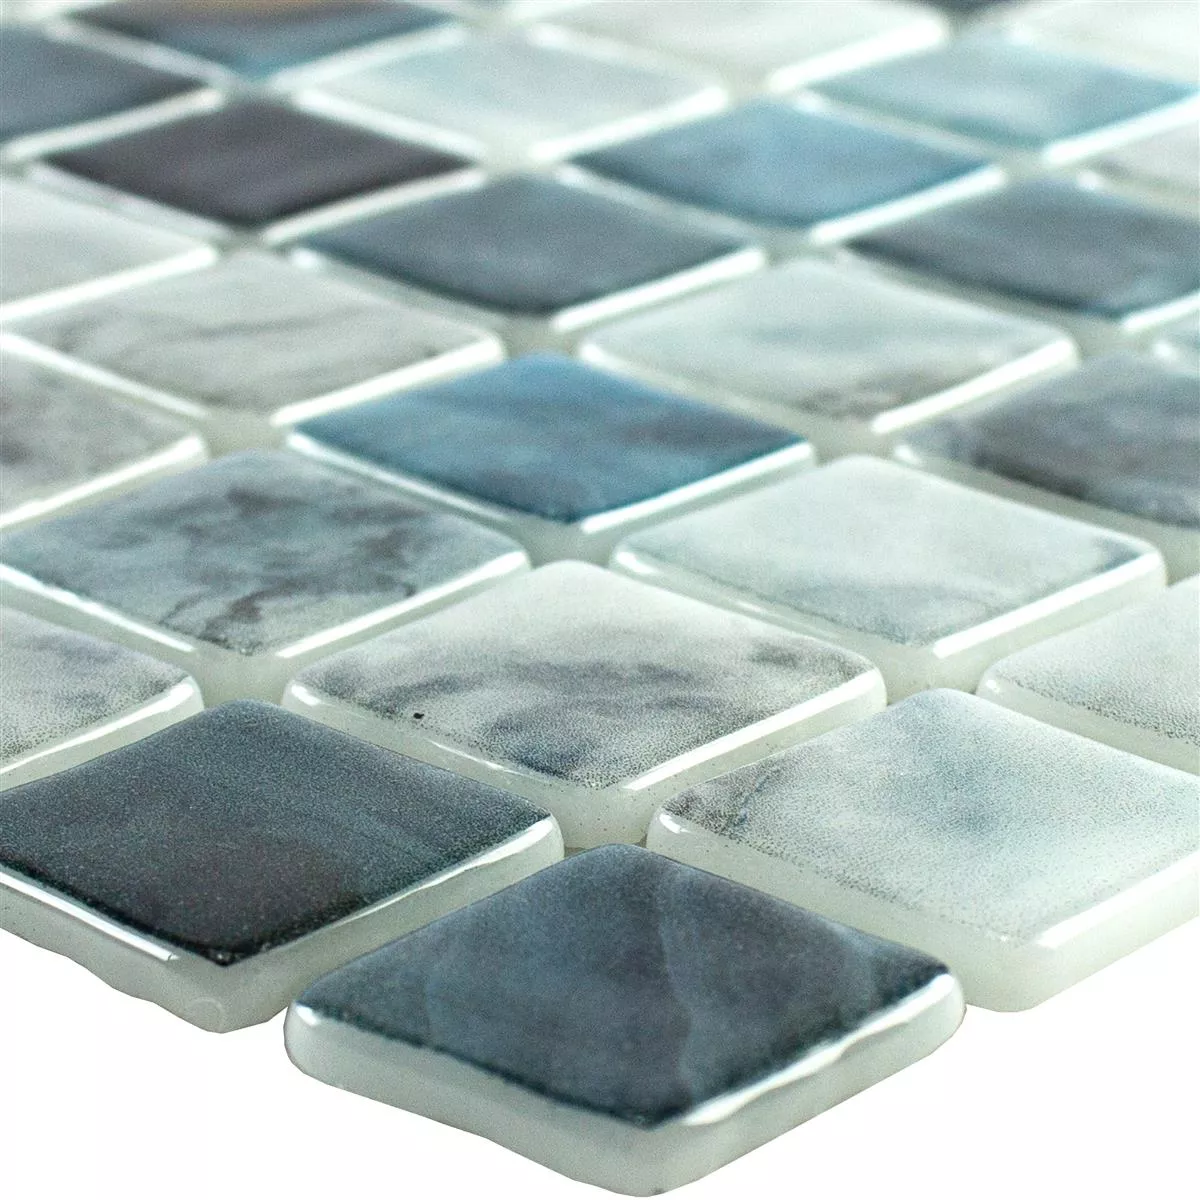 Svømmebassengmosaikk I Glass Baltic Blå Grå 25x25mm